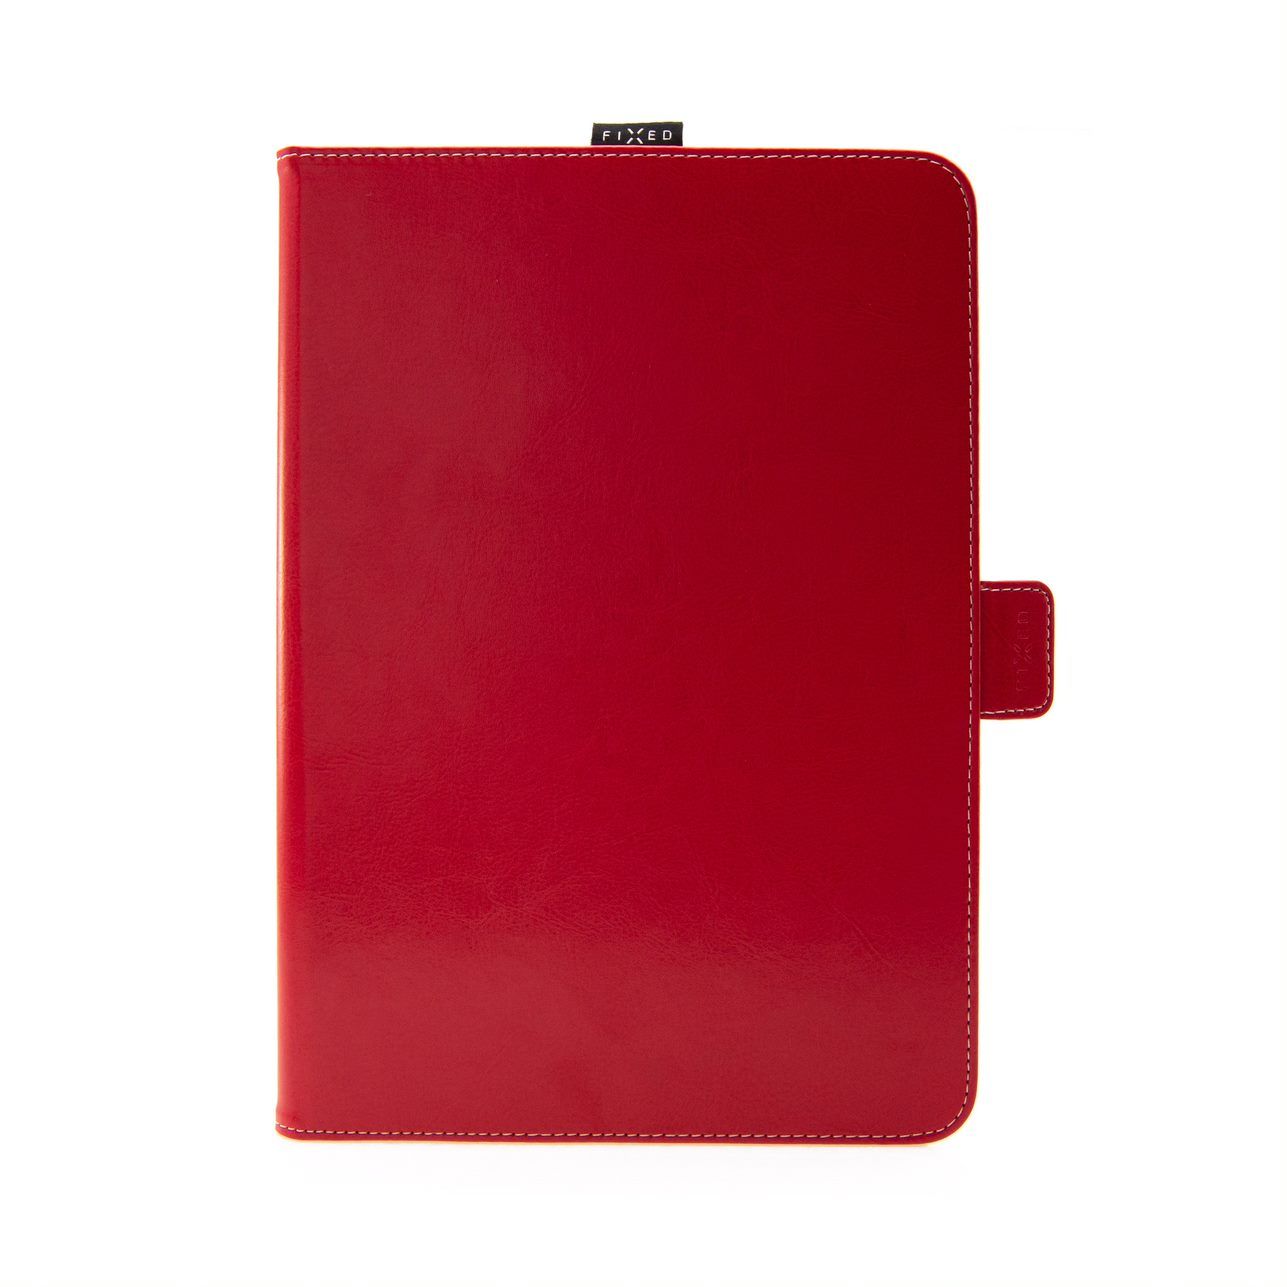 Pouzdro pro 10,1" tablety Novel se stojánkem a kapsou pro stylus, PU kůže, červené